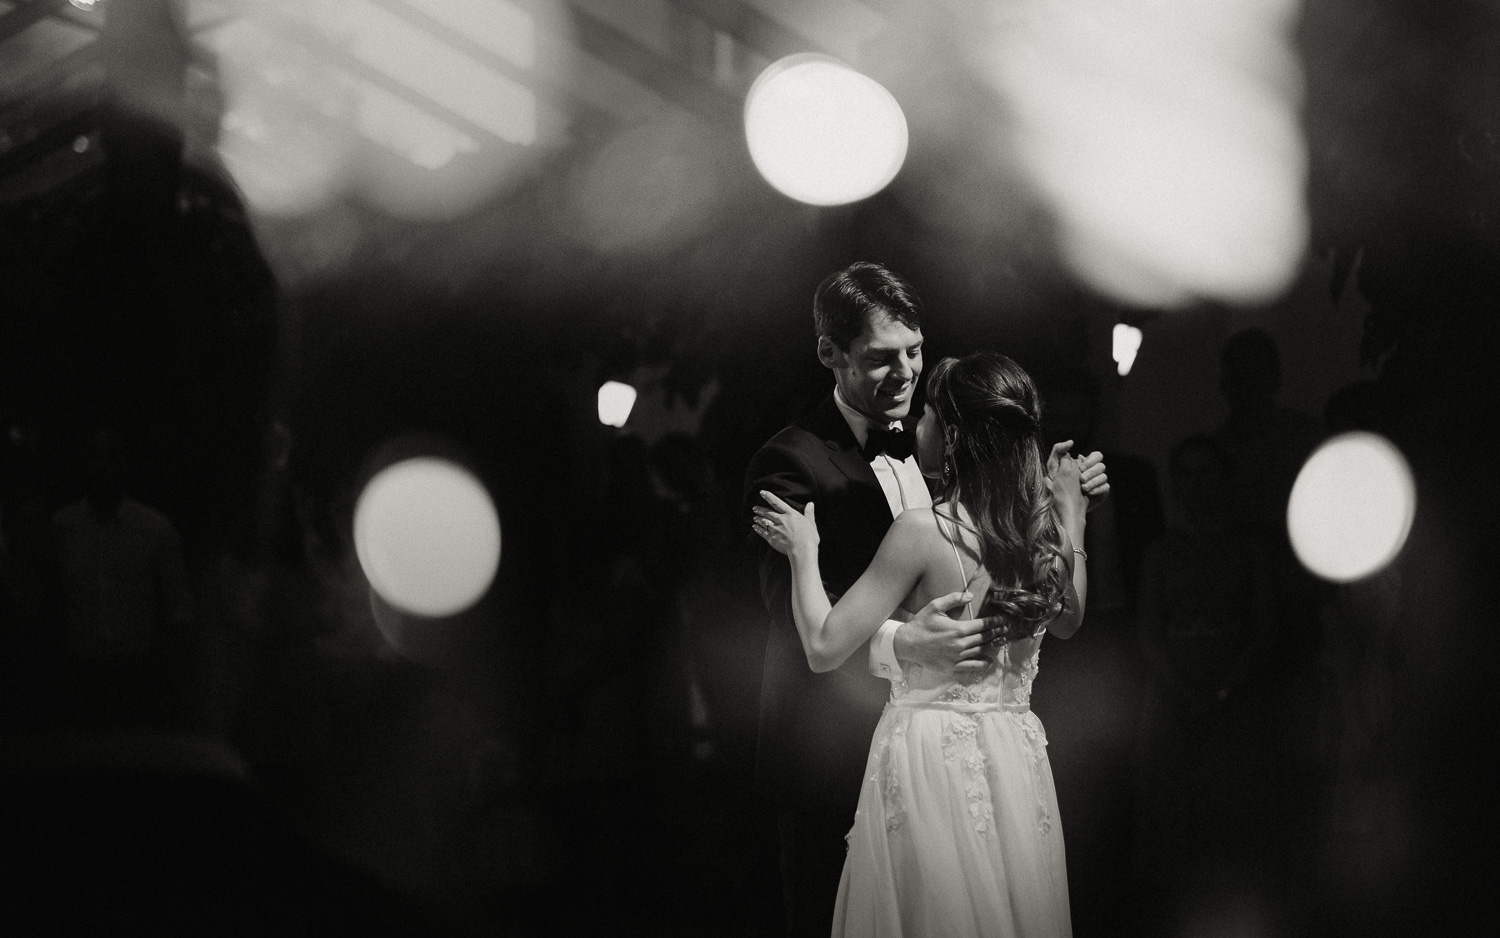 Rangefinder-Rising-Stars-Wedding-Photography-2018-Hochzeitsfotograf-Köln-Kevin-Biberbach-Hochzeitsfoto-Hohchzeitsreportage-Köln-NRW-Bonn-Düsseldorf-Heiraten-in-Köln-Preise-Empfehlung-Fotograf-Ehrenfeld-Hochzeitslocation-29.jpg